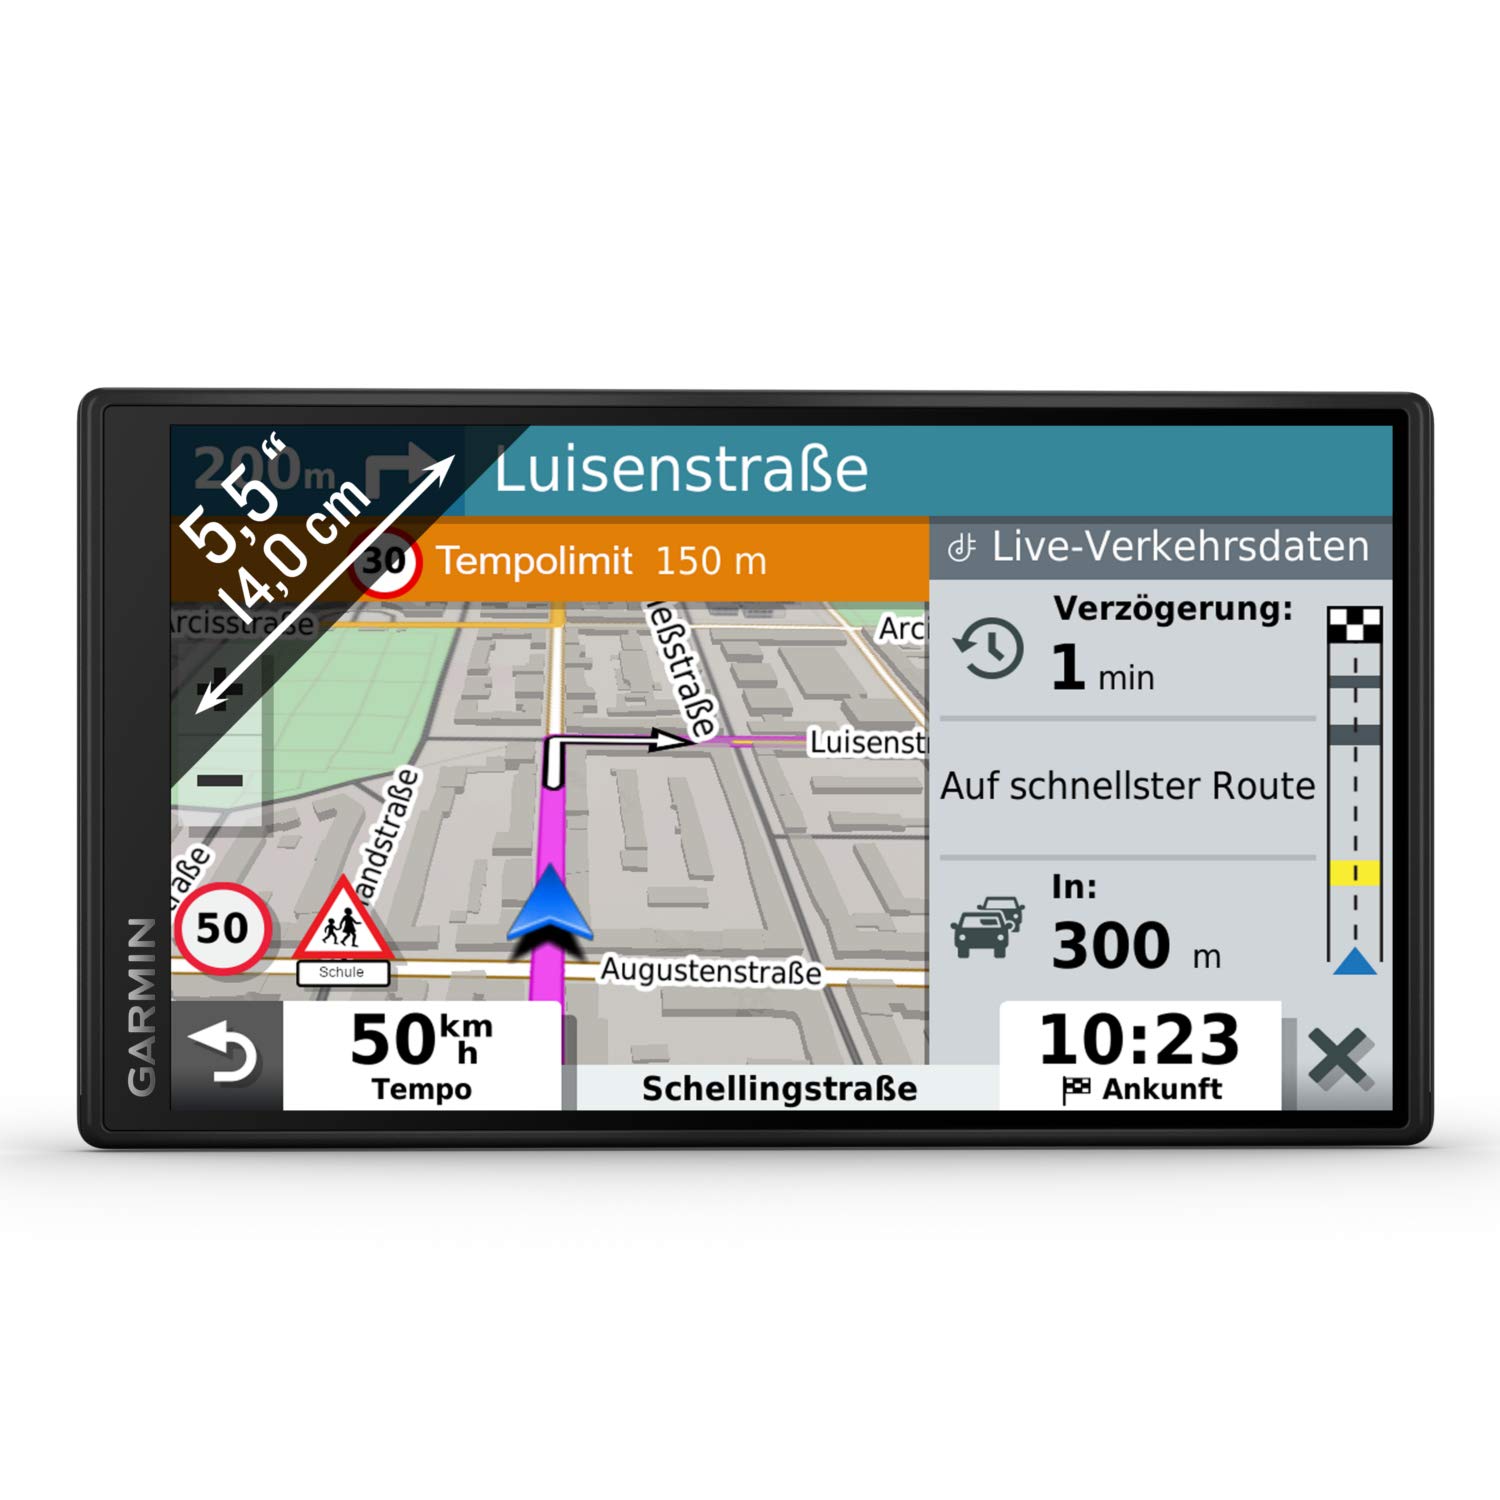 Garmin DriveSmart 55 MT-S EU – Navigationsgerät mit 5,5“ (14 cm) Farbdisplay, vorinstallierten 3D-Karten für Europa (46 Länder), Live Traffic via Garmin Drive App, Sprachsteuerung & Fahrerassistenz